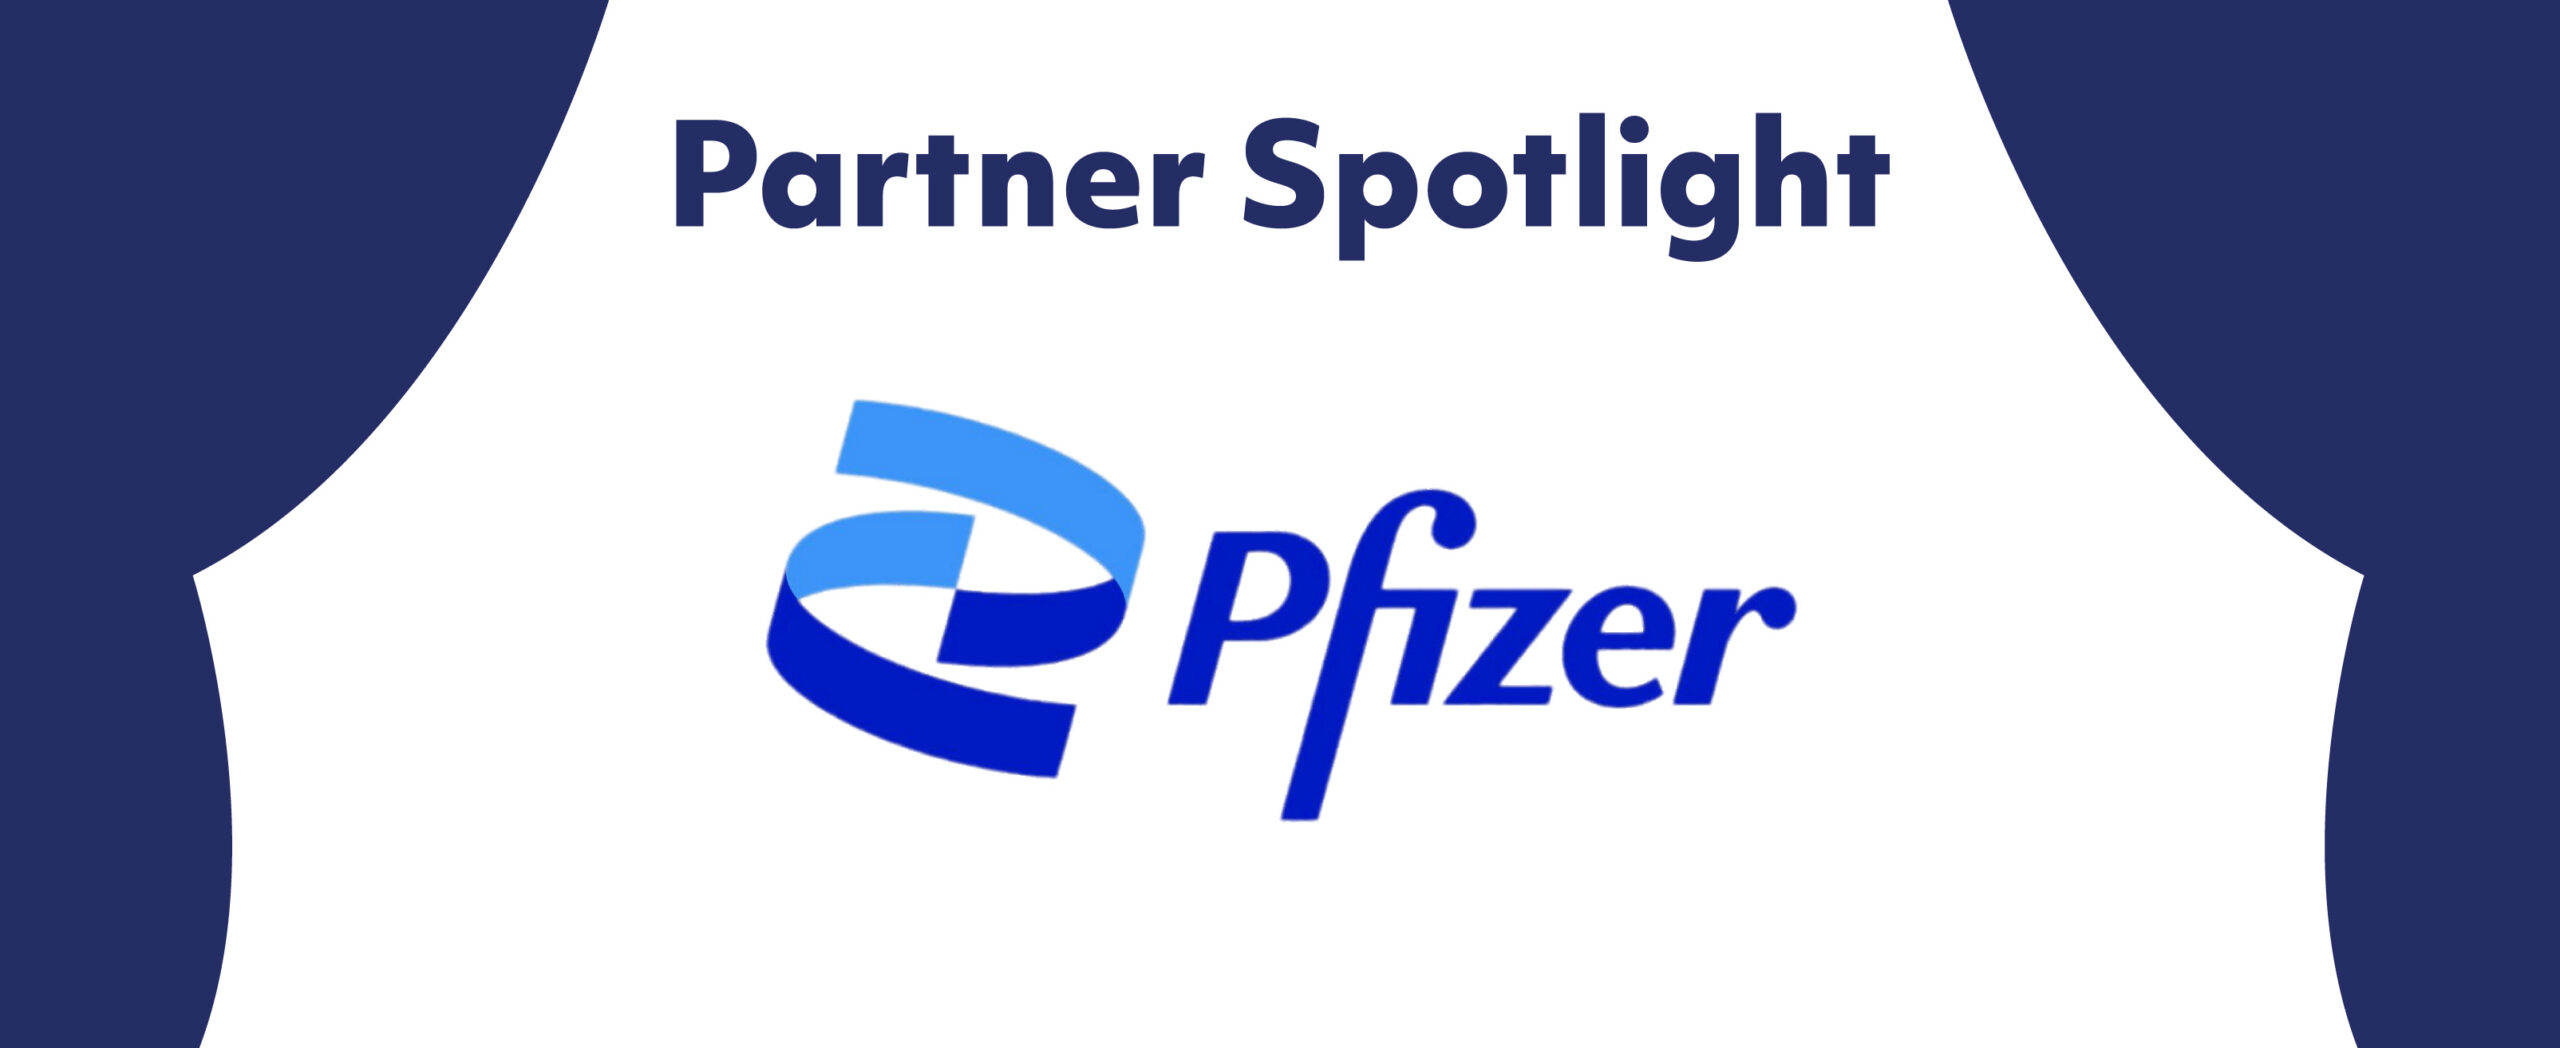 Partner Spotlight: Pfizer